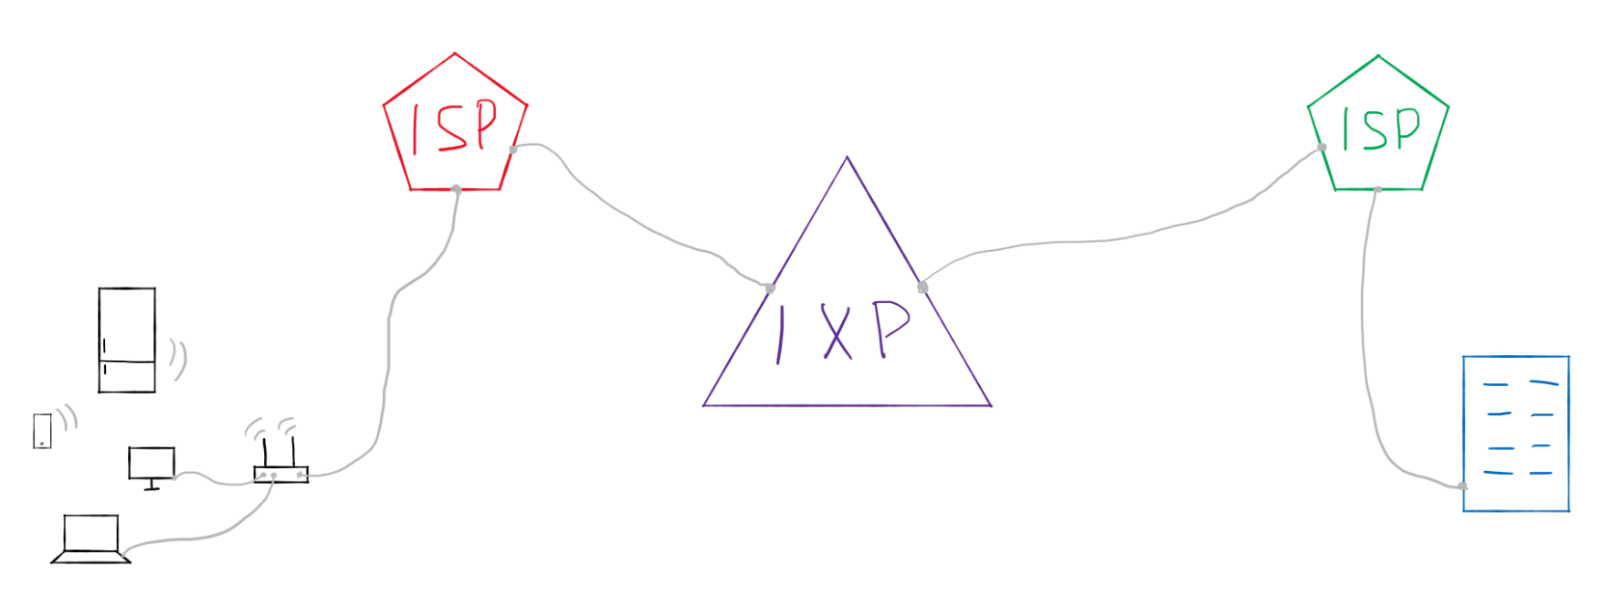 IXP — Internet eXchange Point